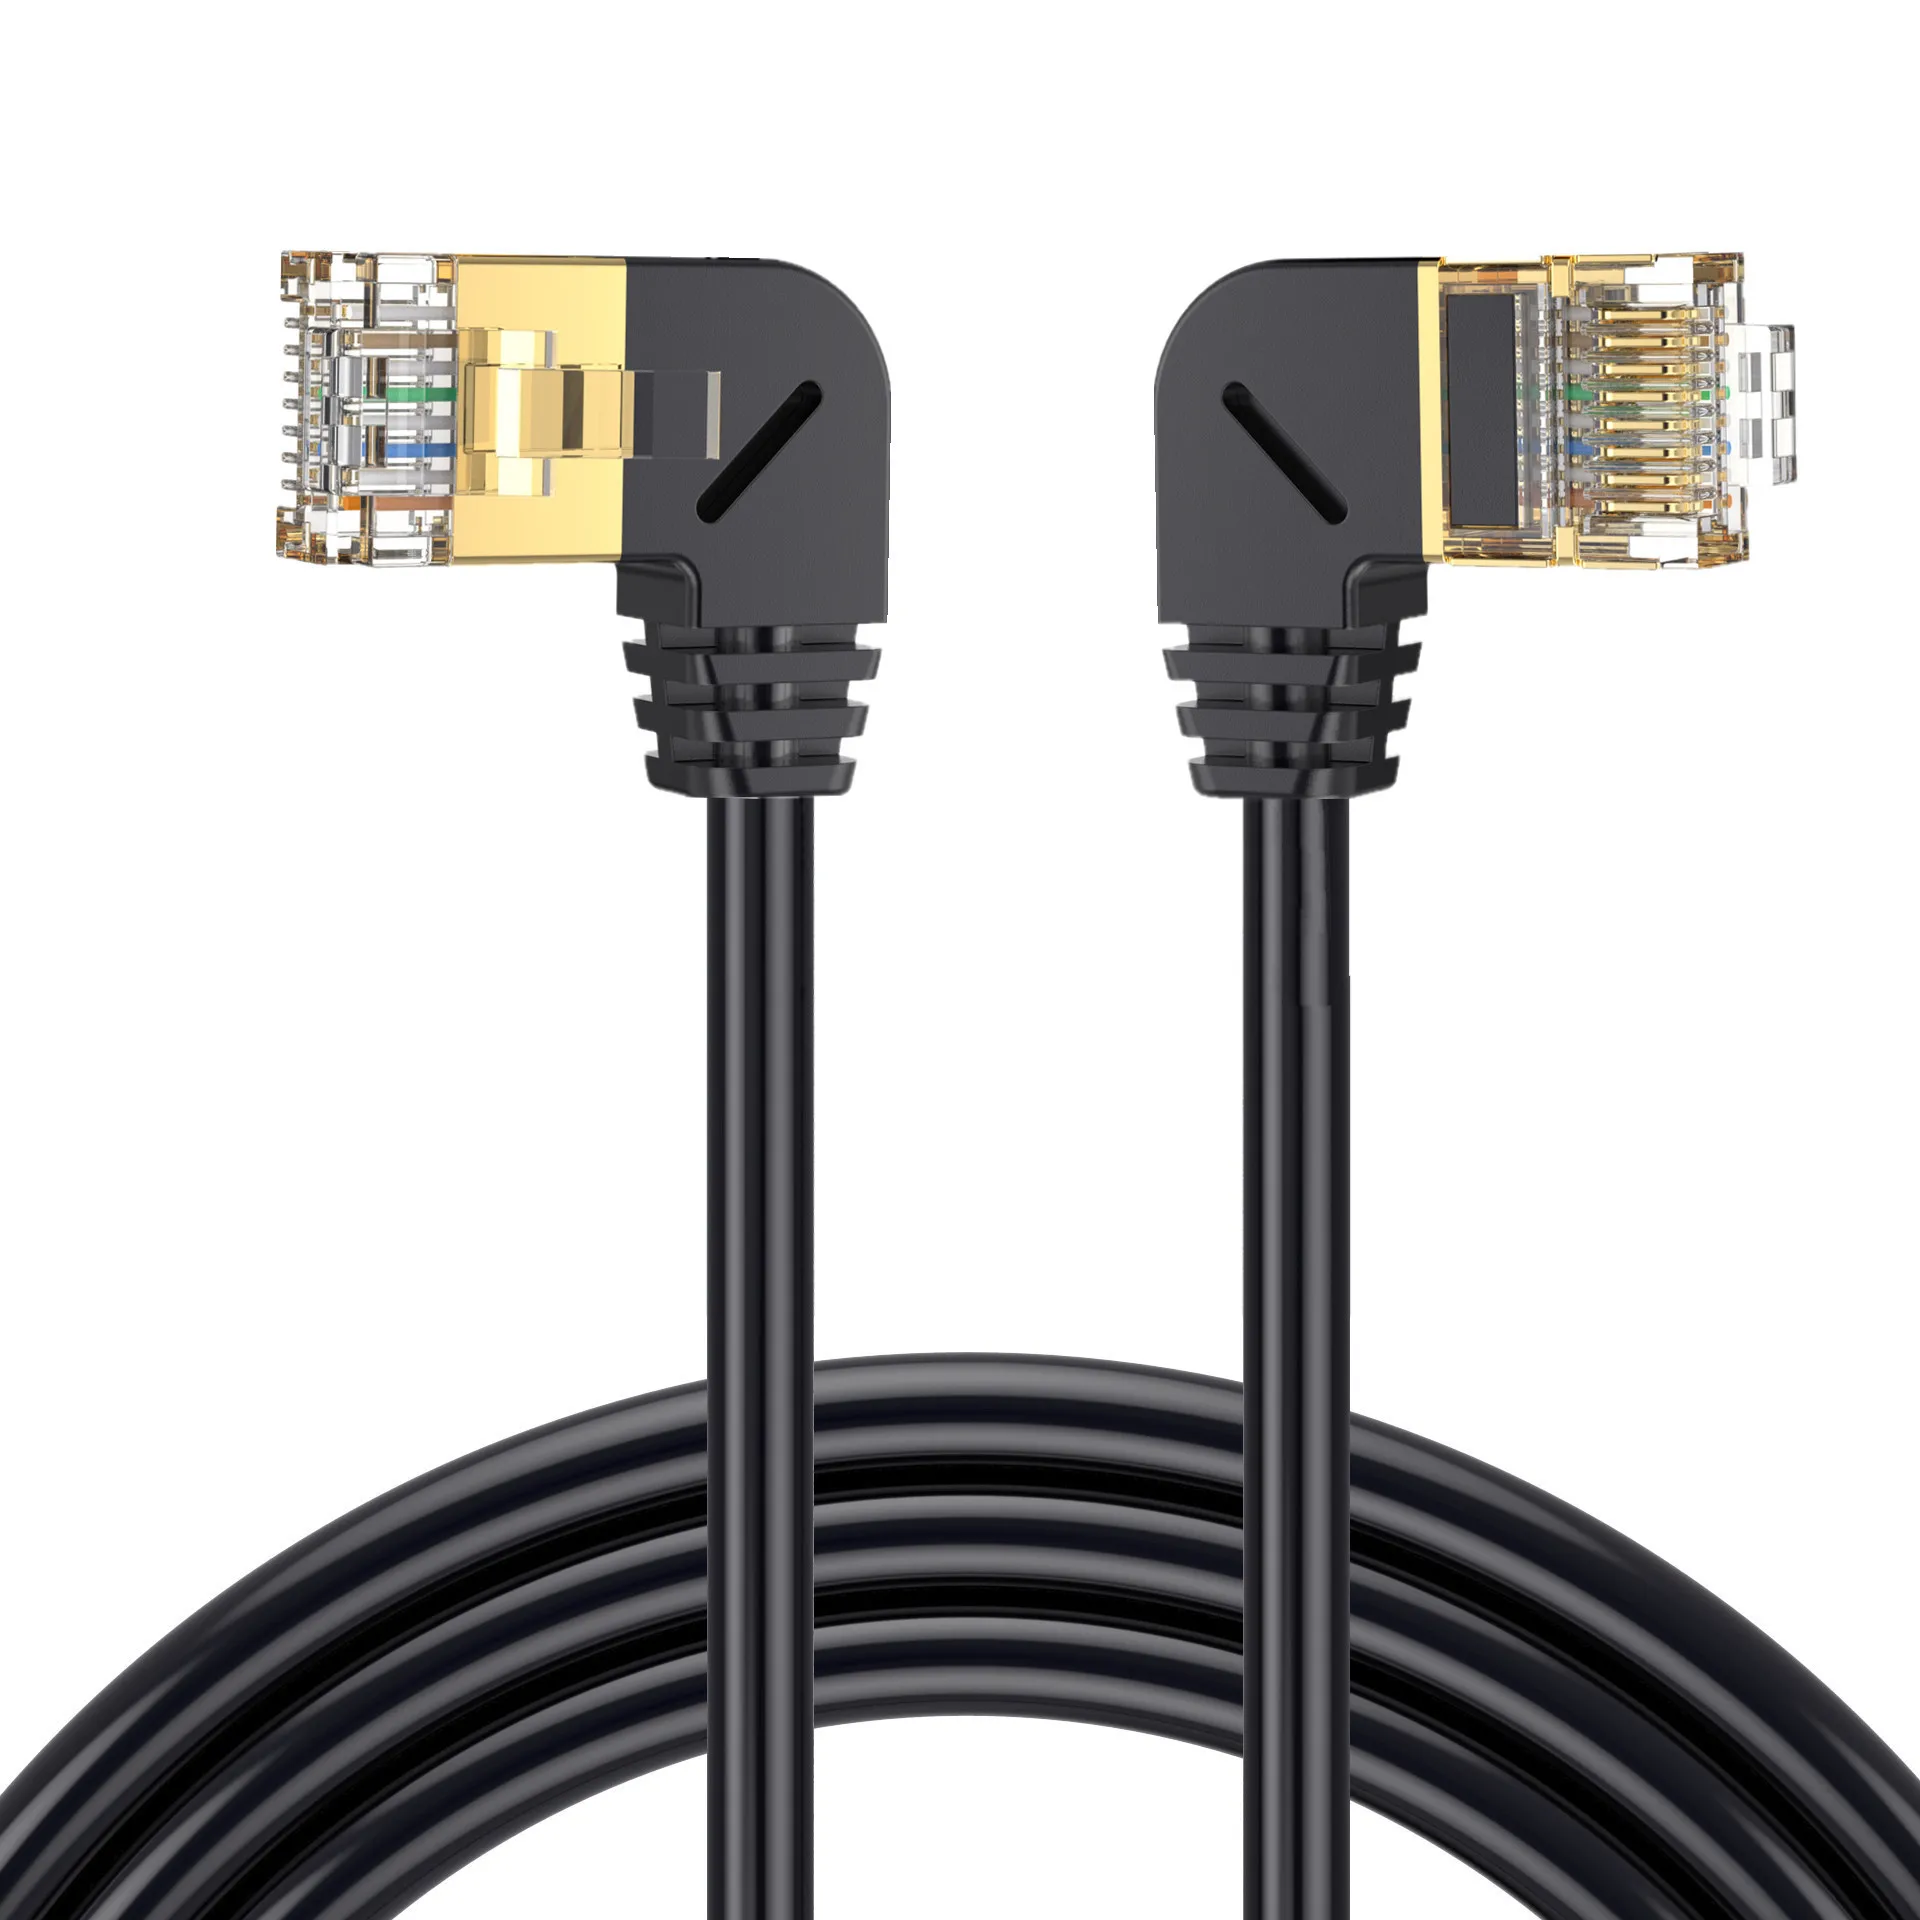 Dublu Cot în Jos și în Sus în Unghi de 90 de Grade CAT8 40Gbps 8P8C Cat 5 Cablu de Rețea Ethernet RJ45 Lan Patch Cord 0.5 M